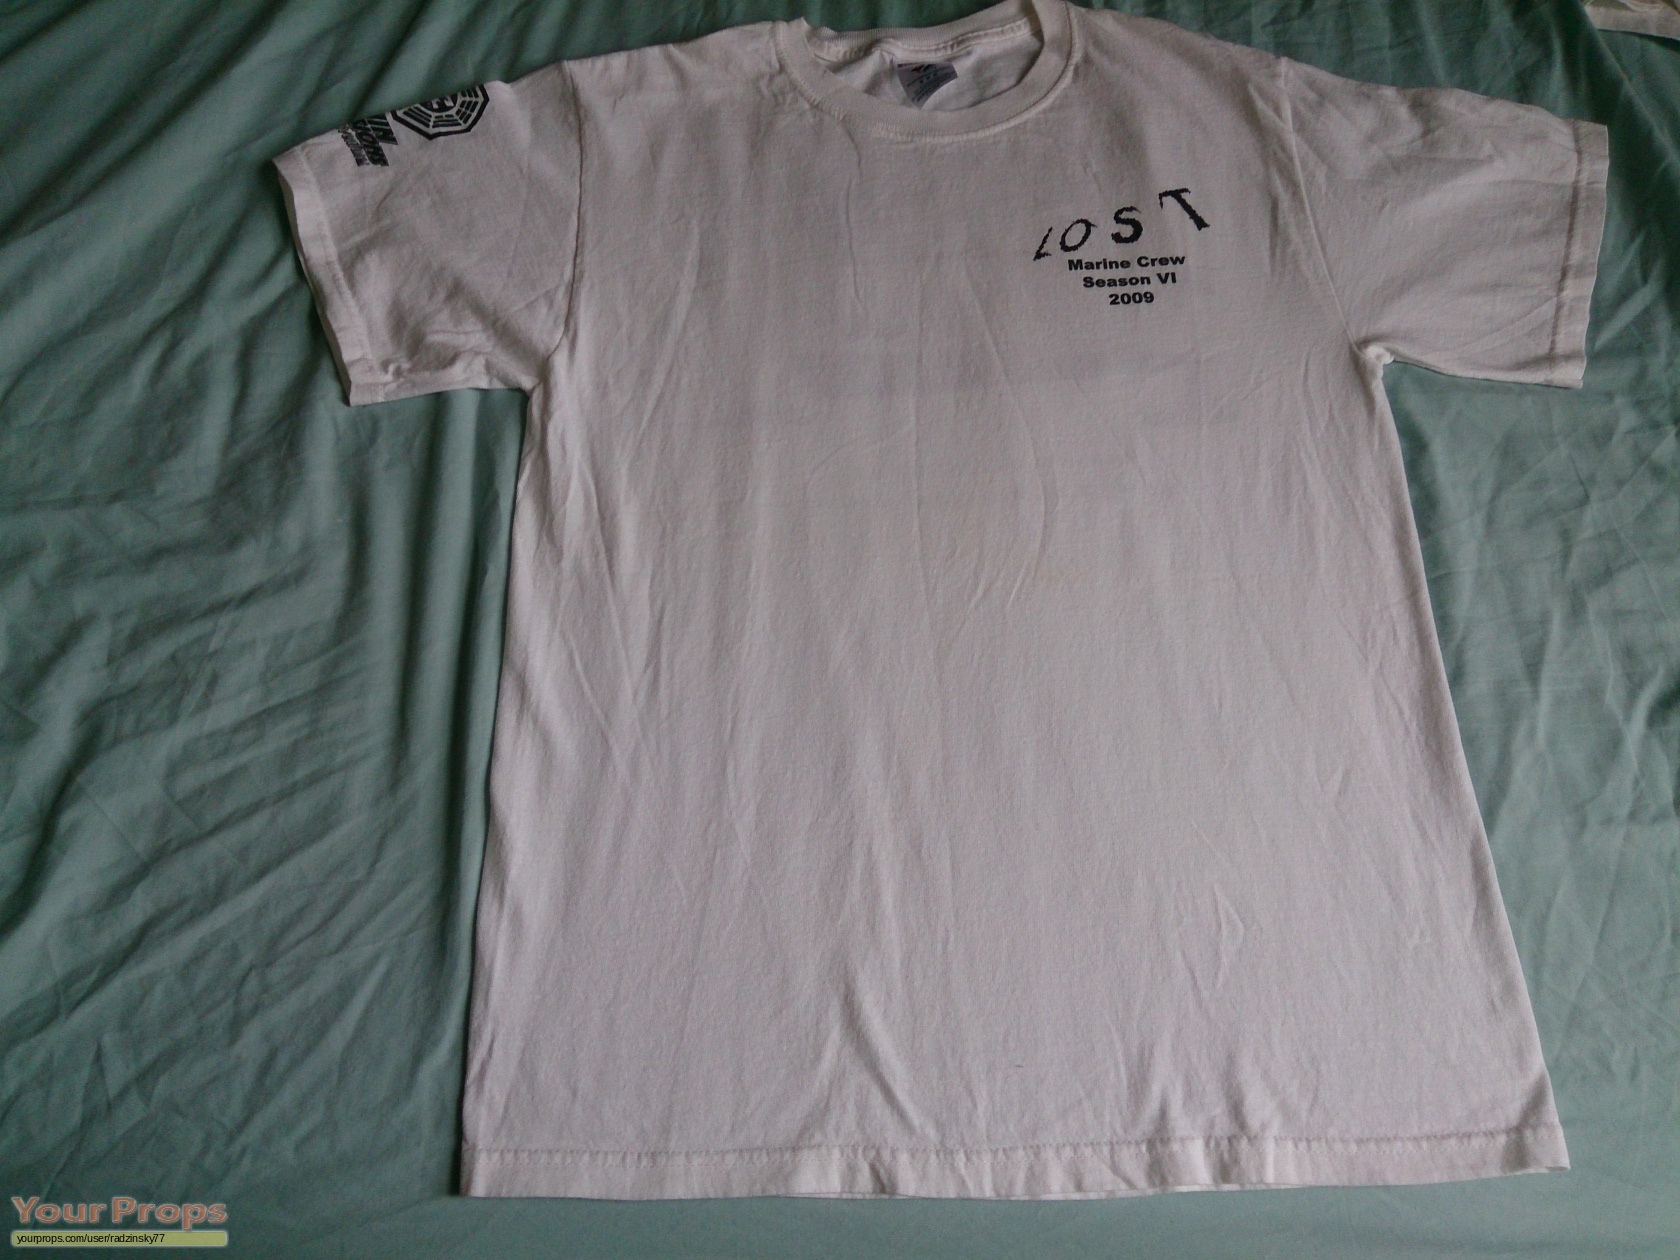 Lost Season 6 Film crew Marine Unit shirt original film-crew item